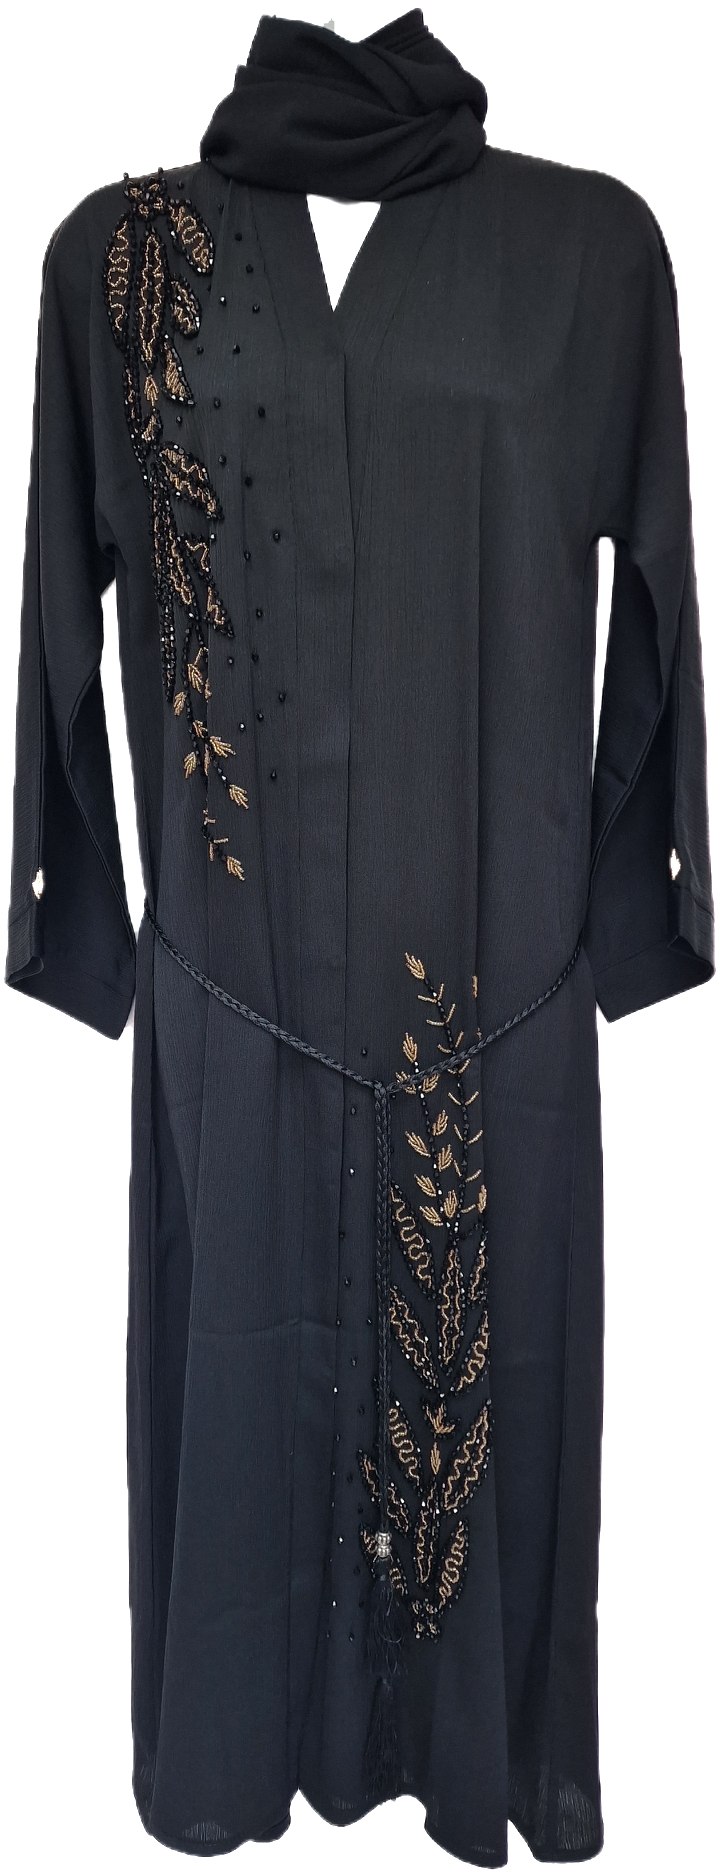 Black Abaya with Gold Flower Embellishments